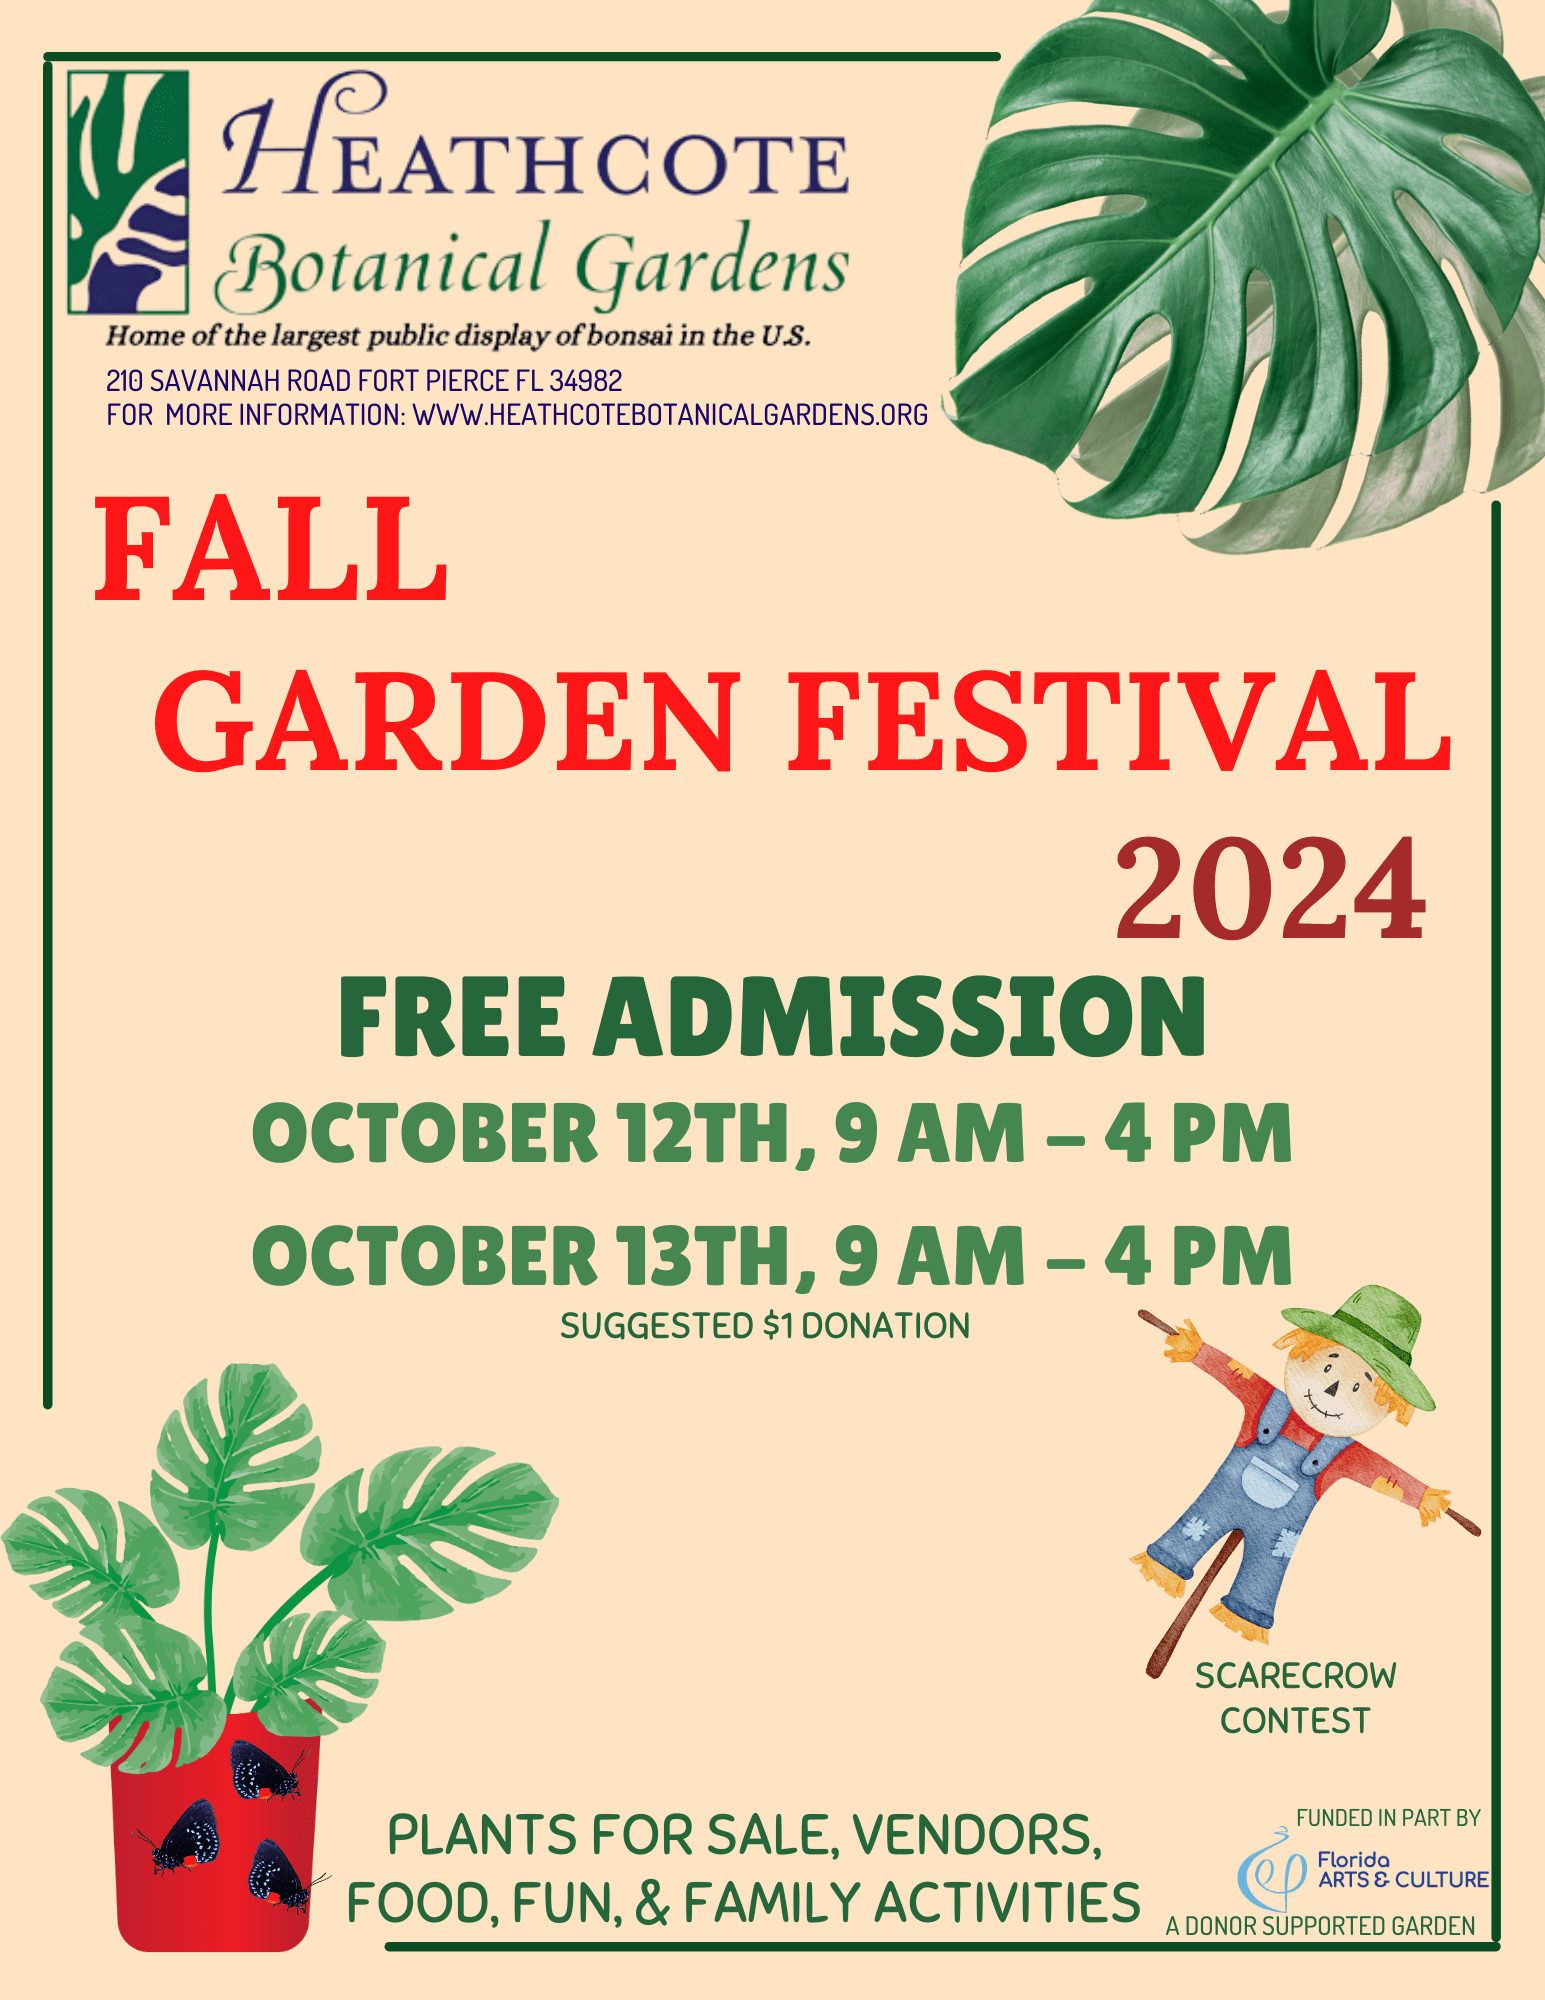 Fall Garden Festival 2024 Heathcote Botanical Gardens